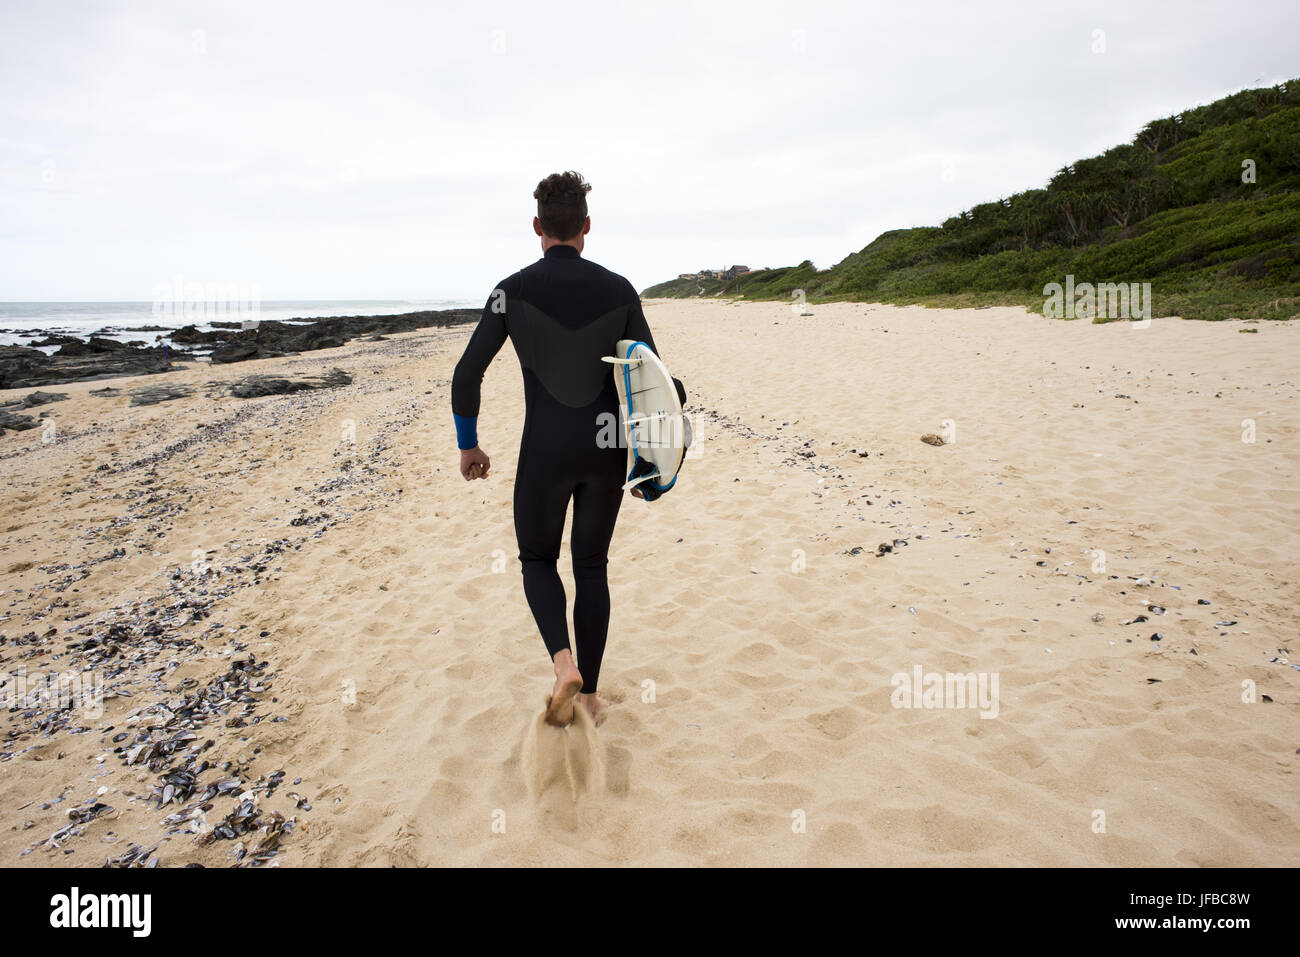 Surfer promenades le long beach Banque D'Images